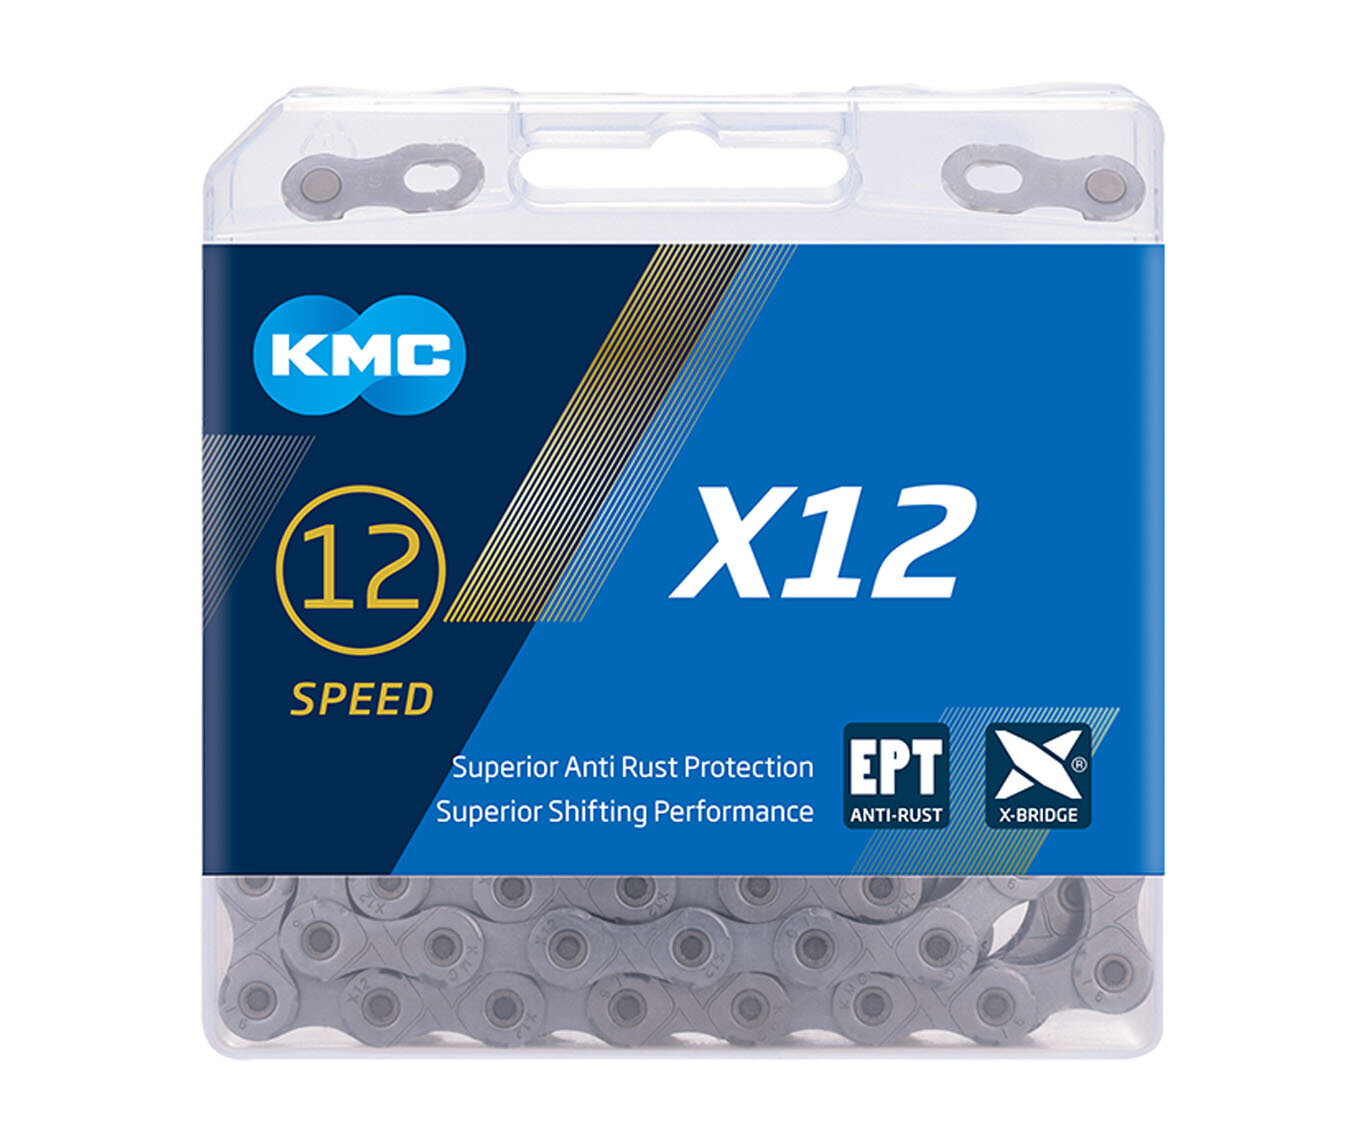 Цепь KMC X12 EPT (Anti-Rust series), 12 ск, 126 зв, с замком